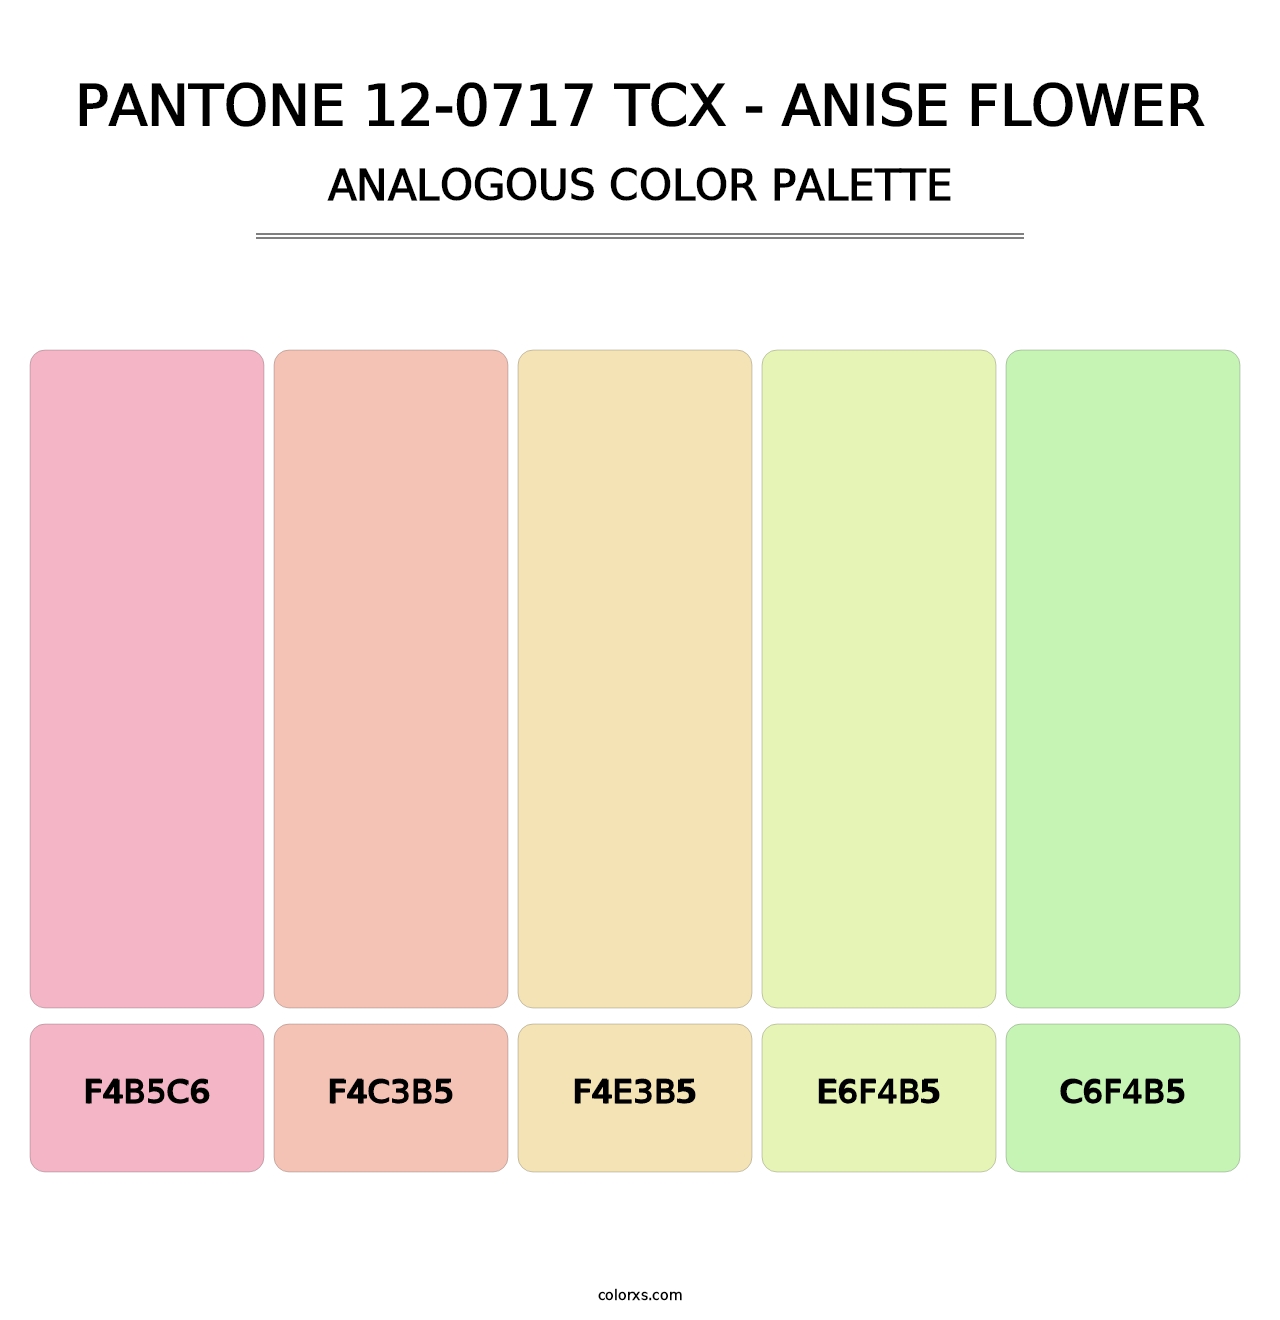 PANTONE 12-0717 TCX - Anise Flower - Analogous Color Palette